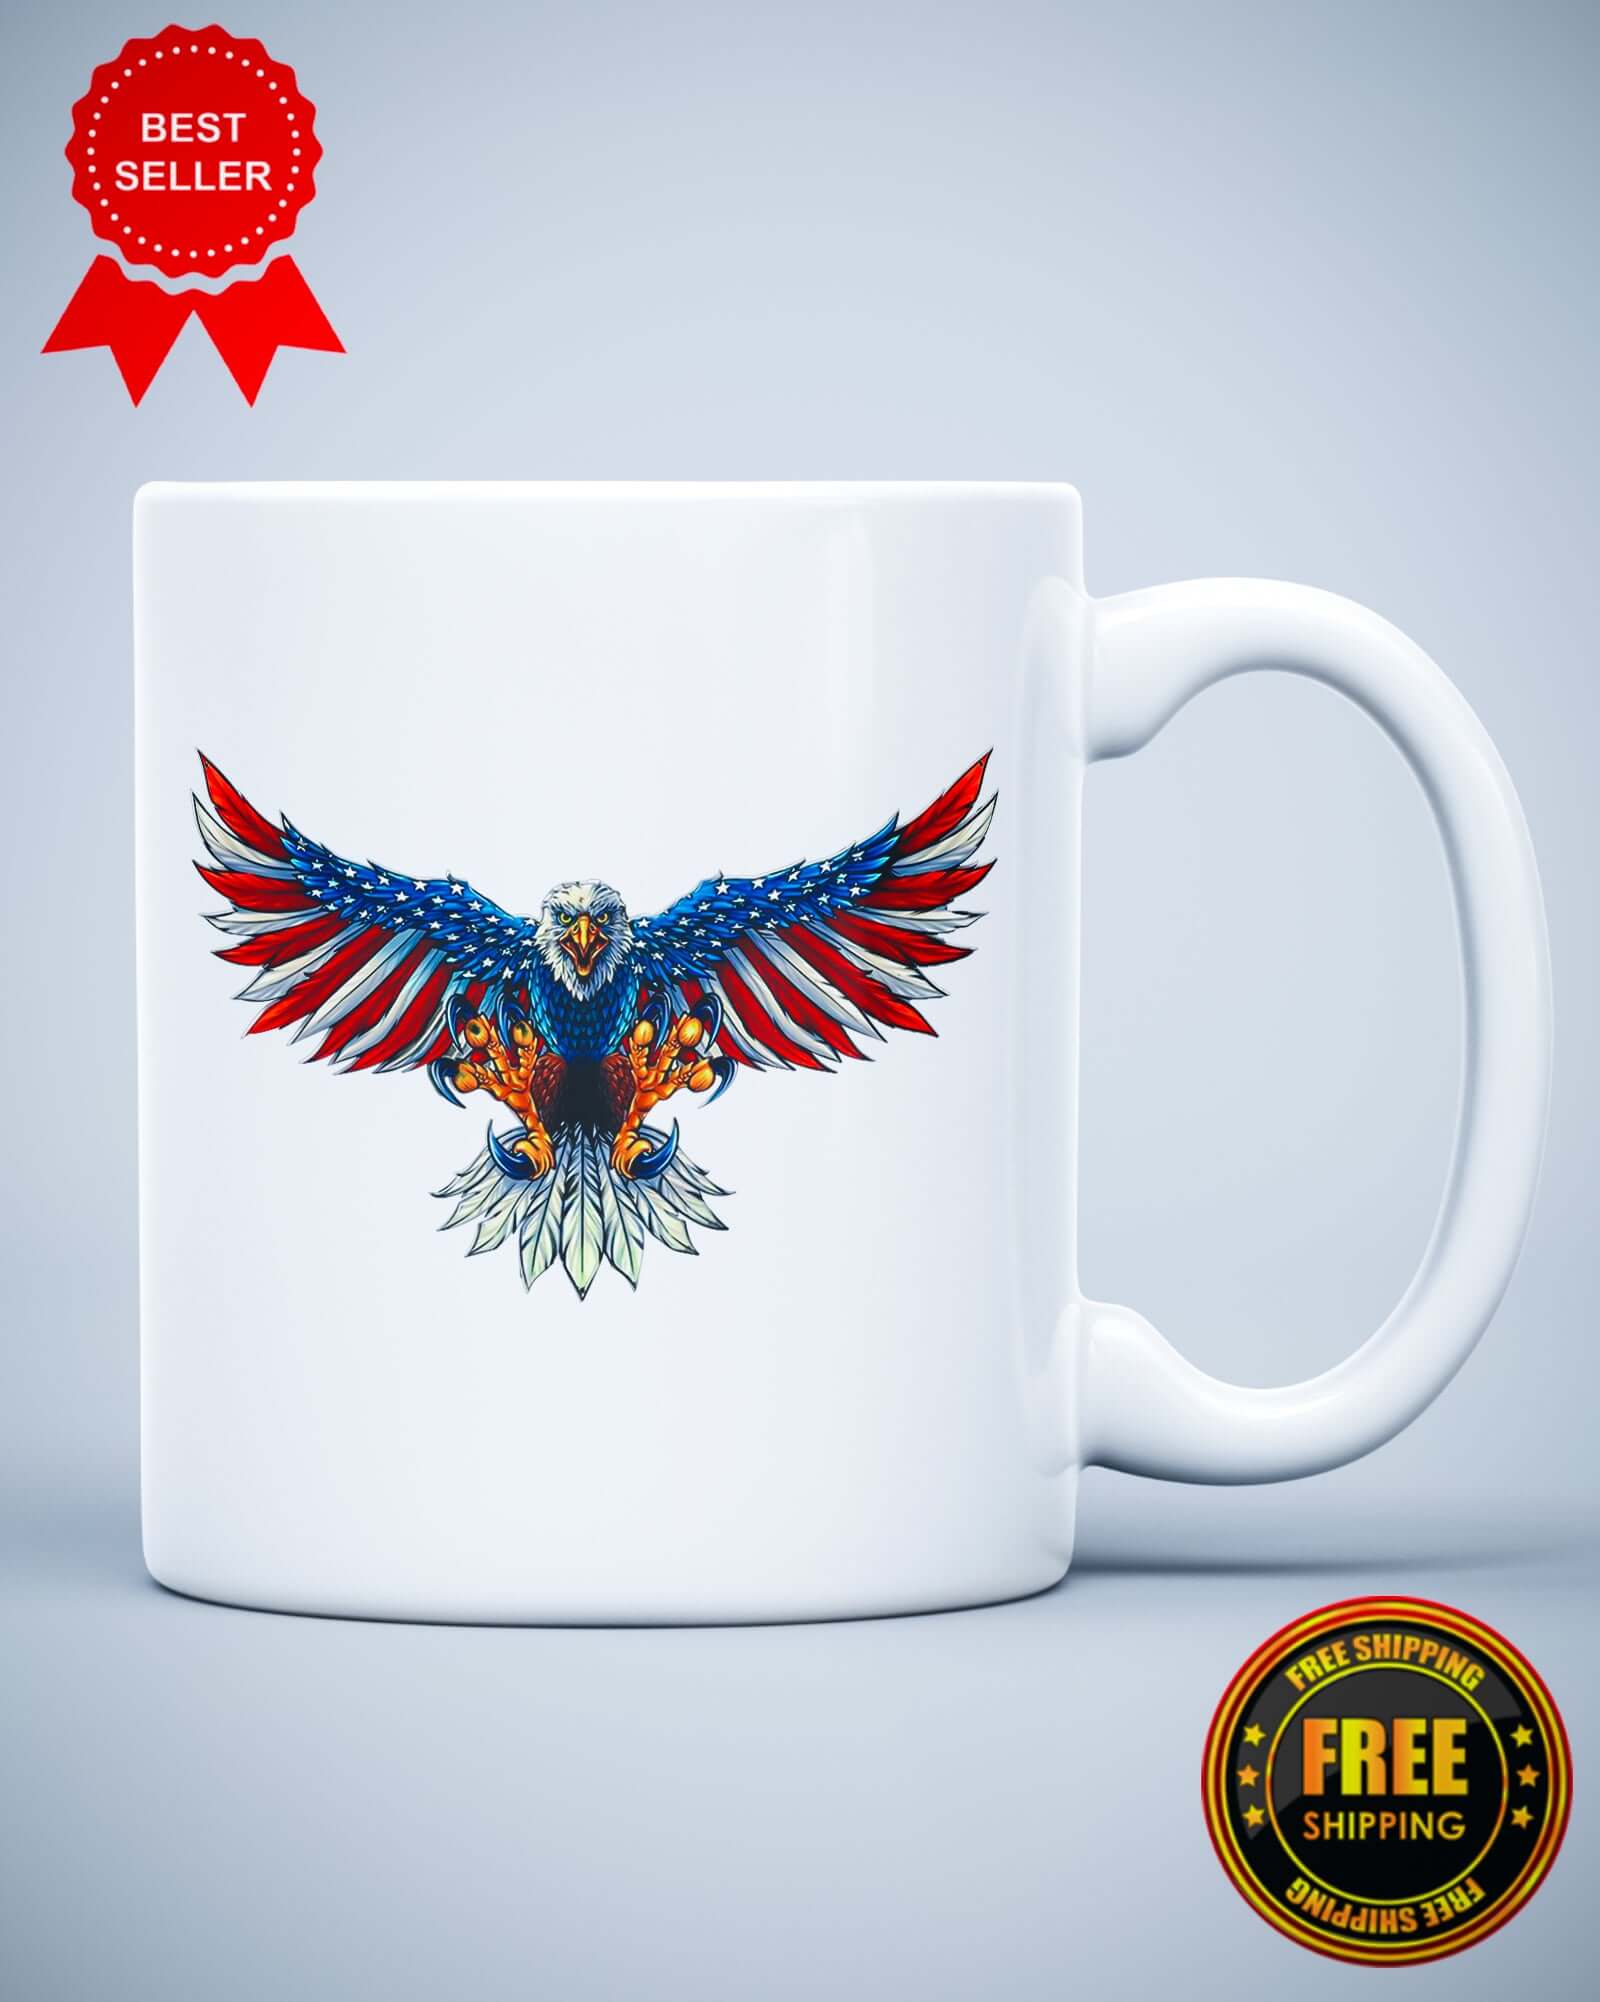 Eagle Flag USA Patriotic Graphic Ceramic Mug - ApparelinClick